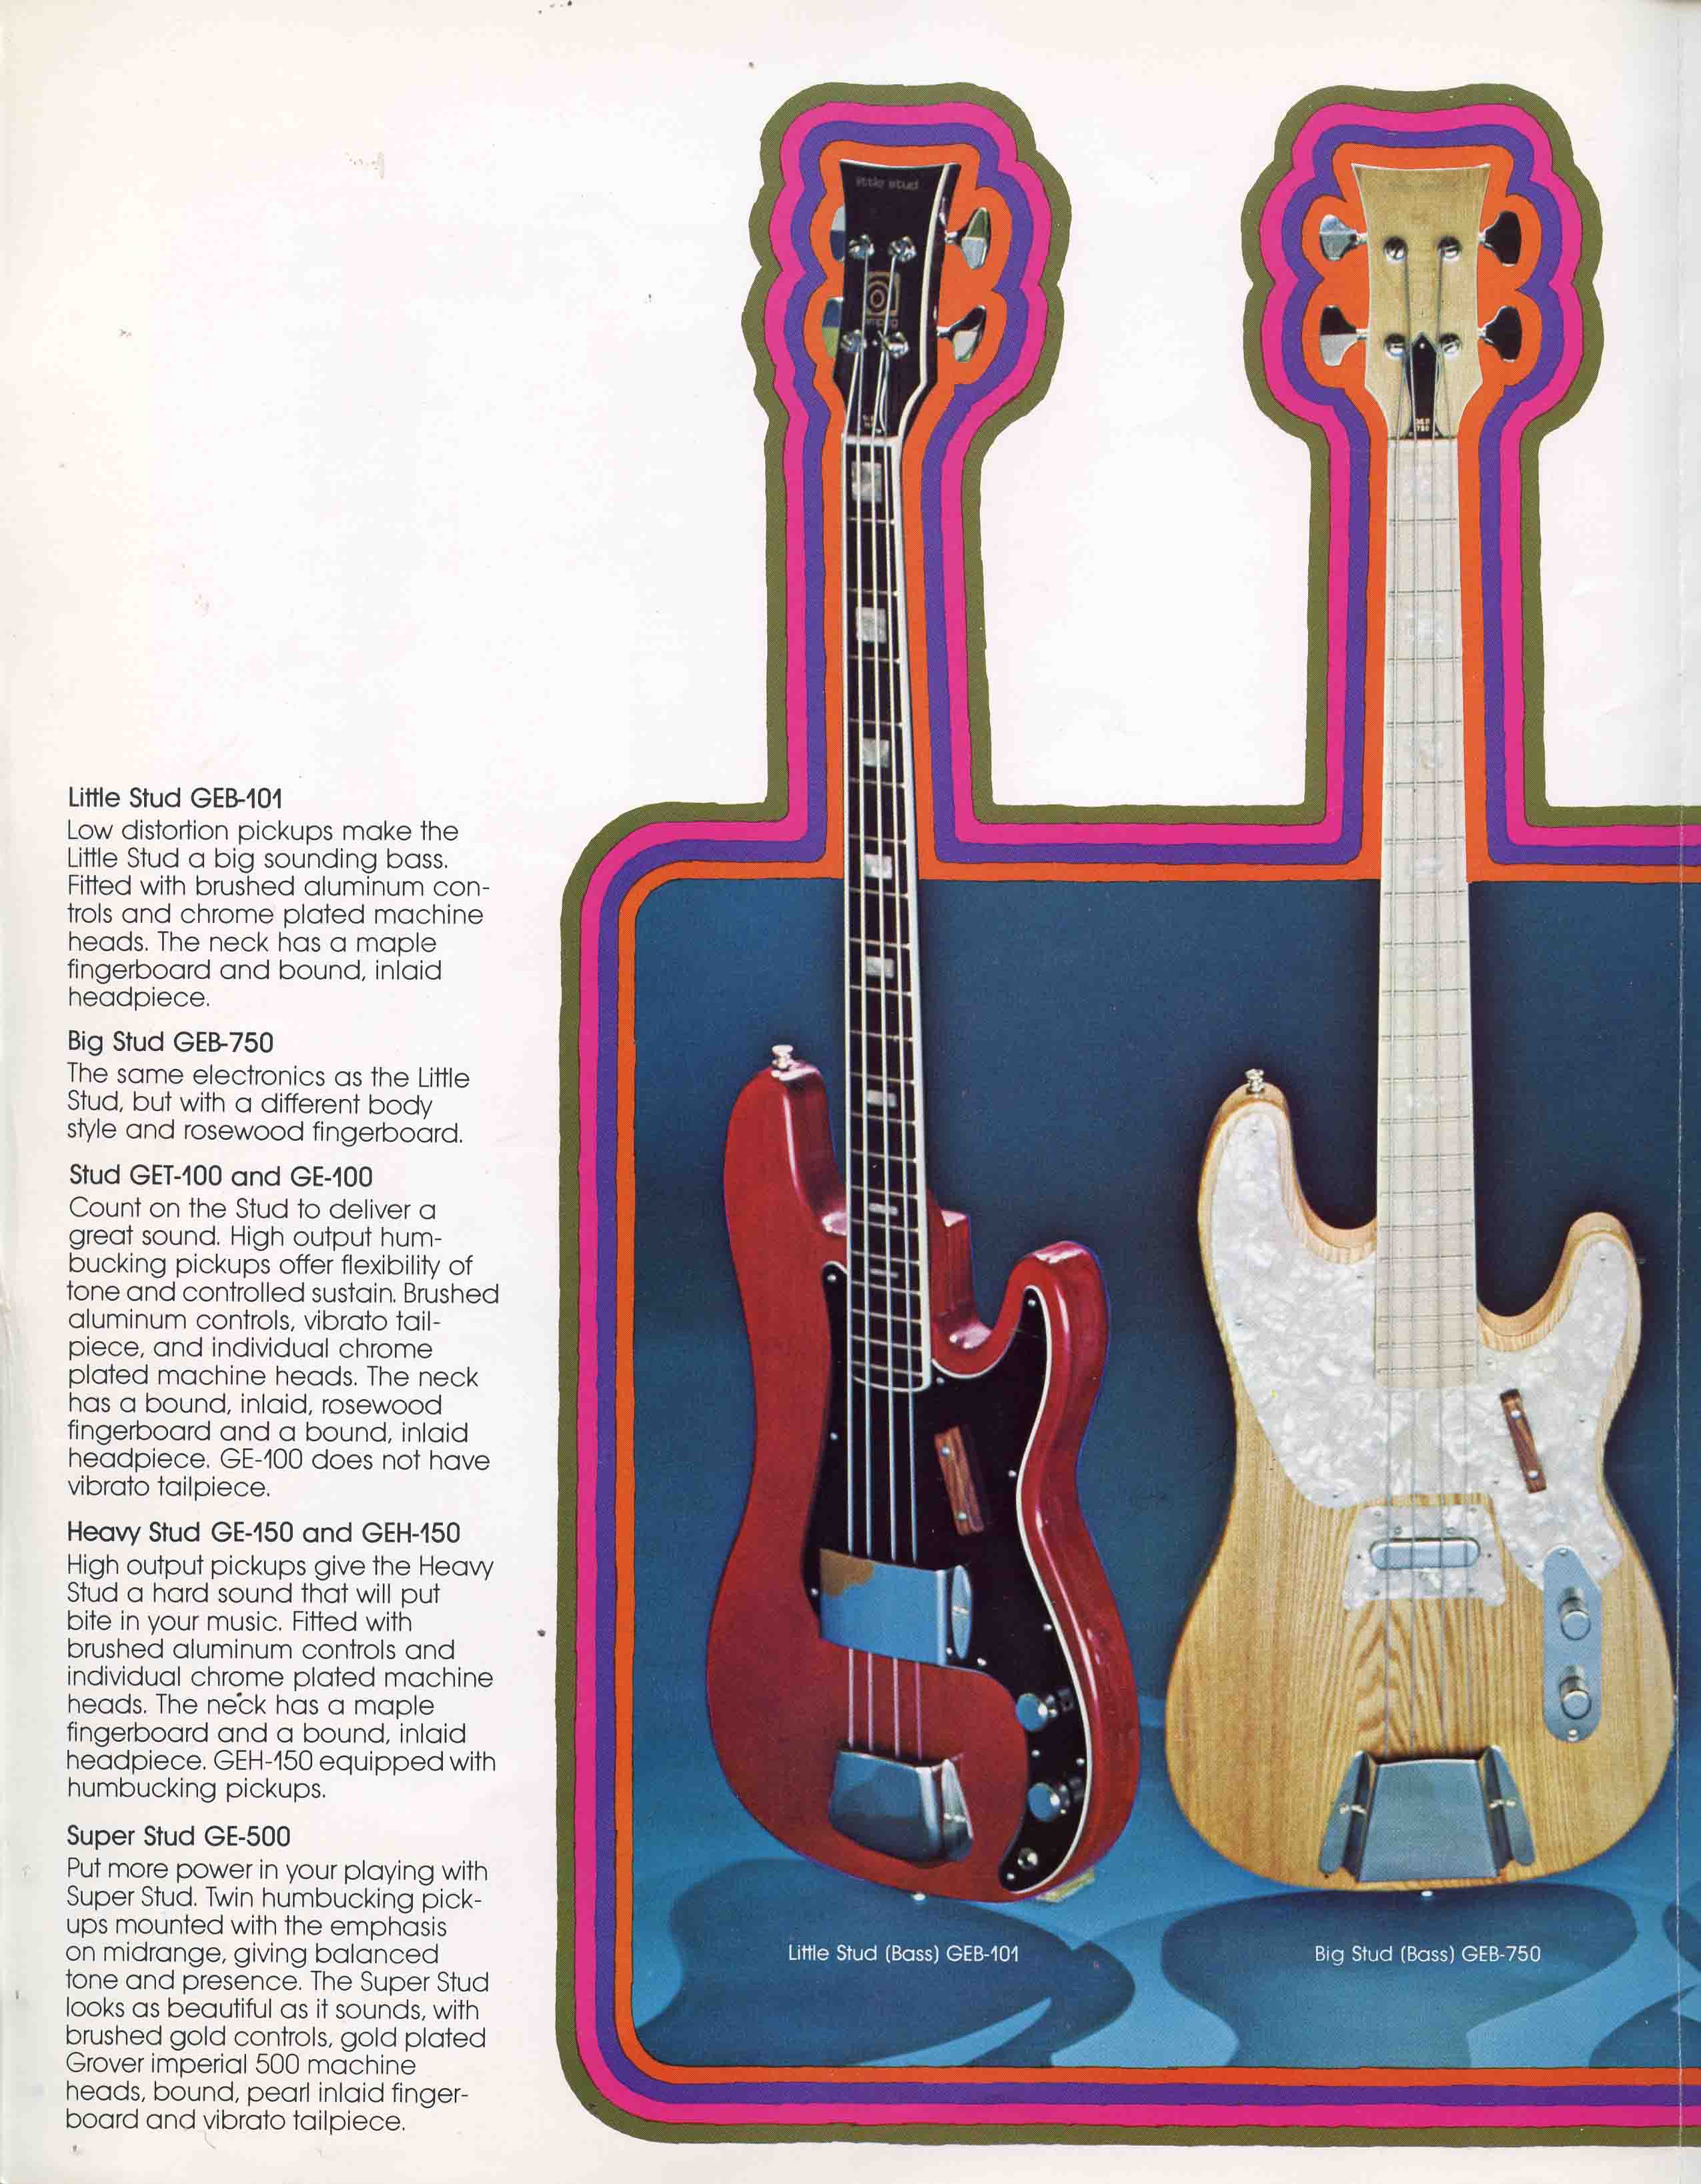 1973 Ampeg Guitars Ad (Stud Series)